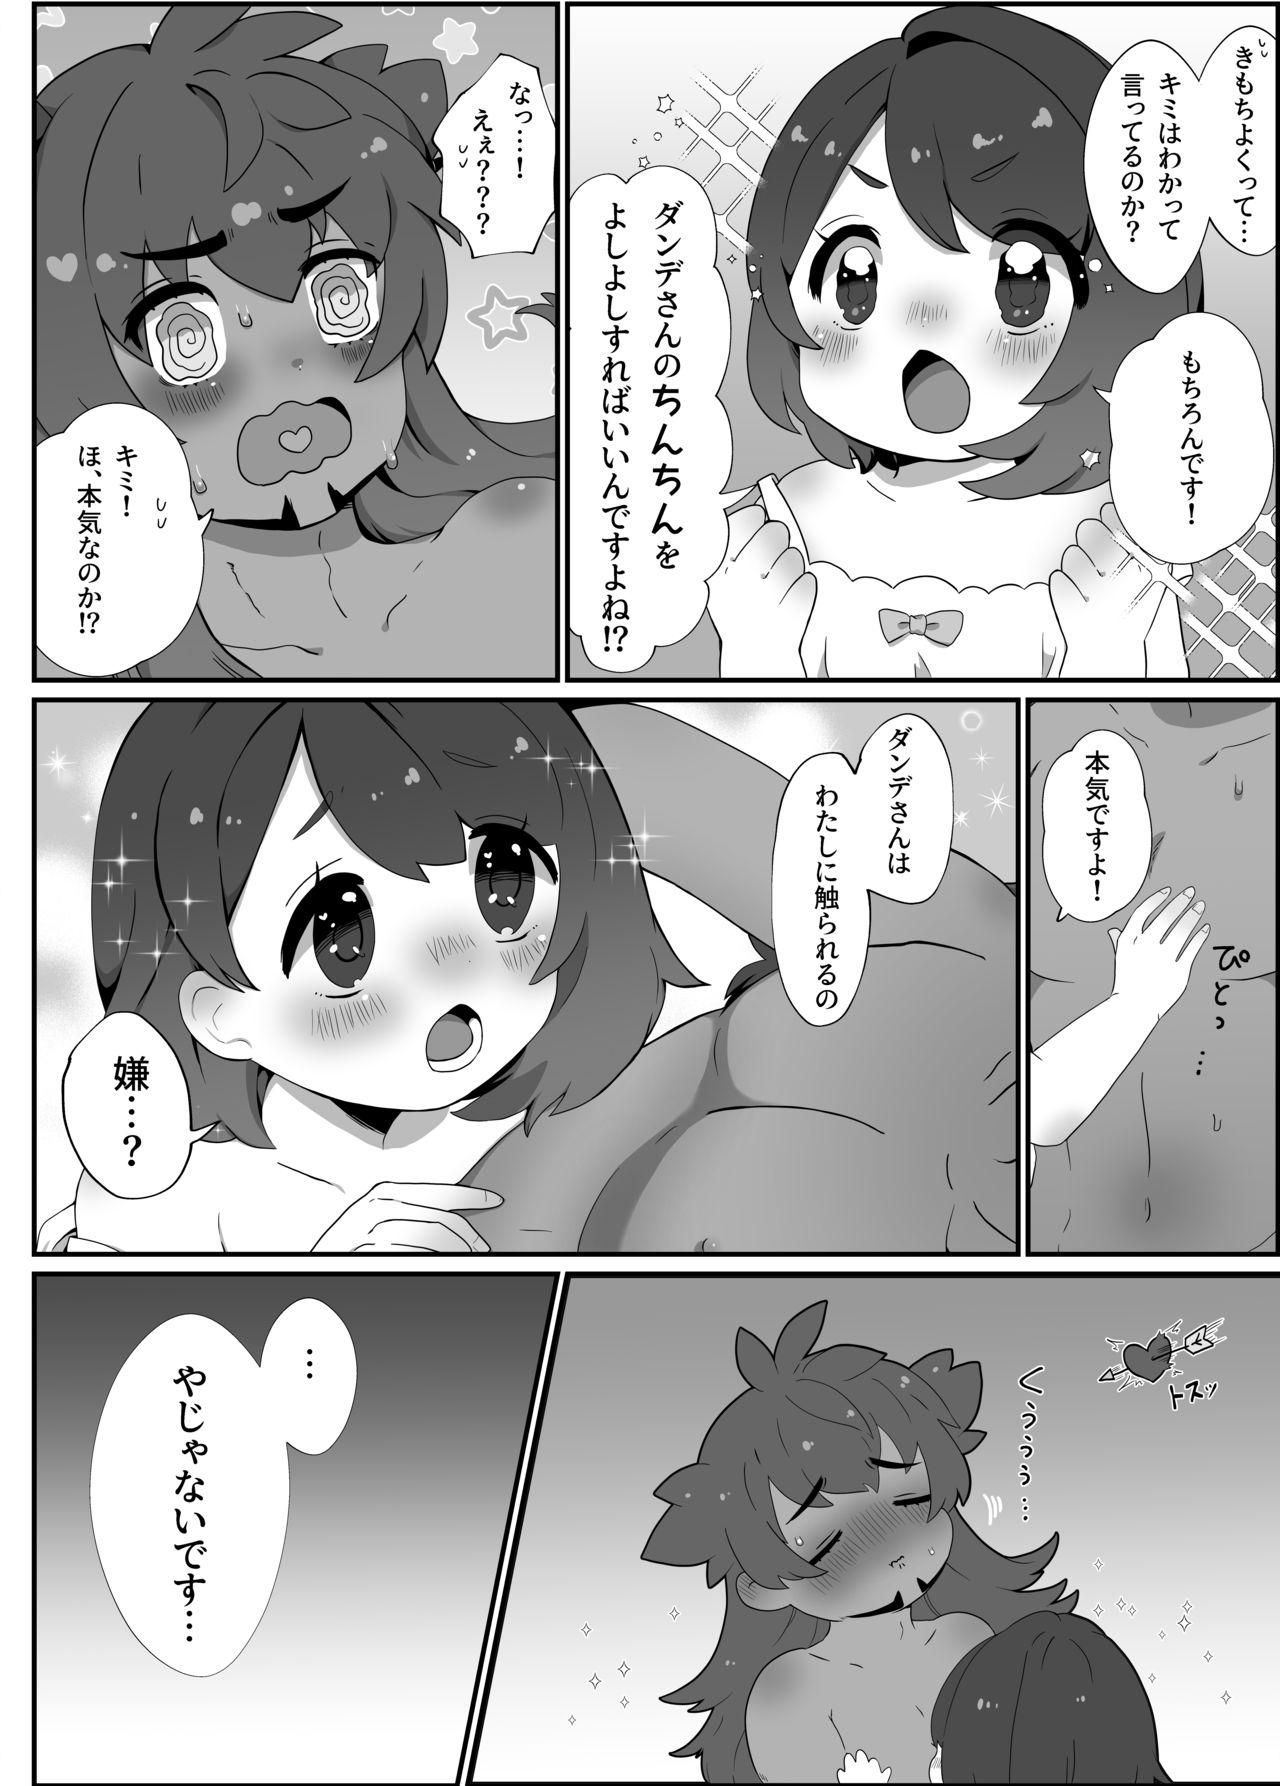 Peituda Daisukidakara Daijoubu! - Pokemon | pocket monsters Gay Facial - Page 5